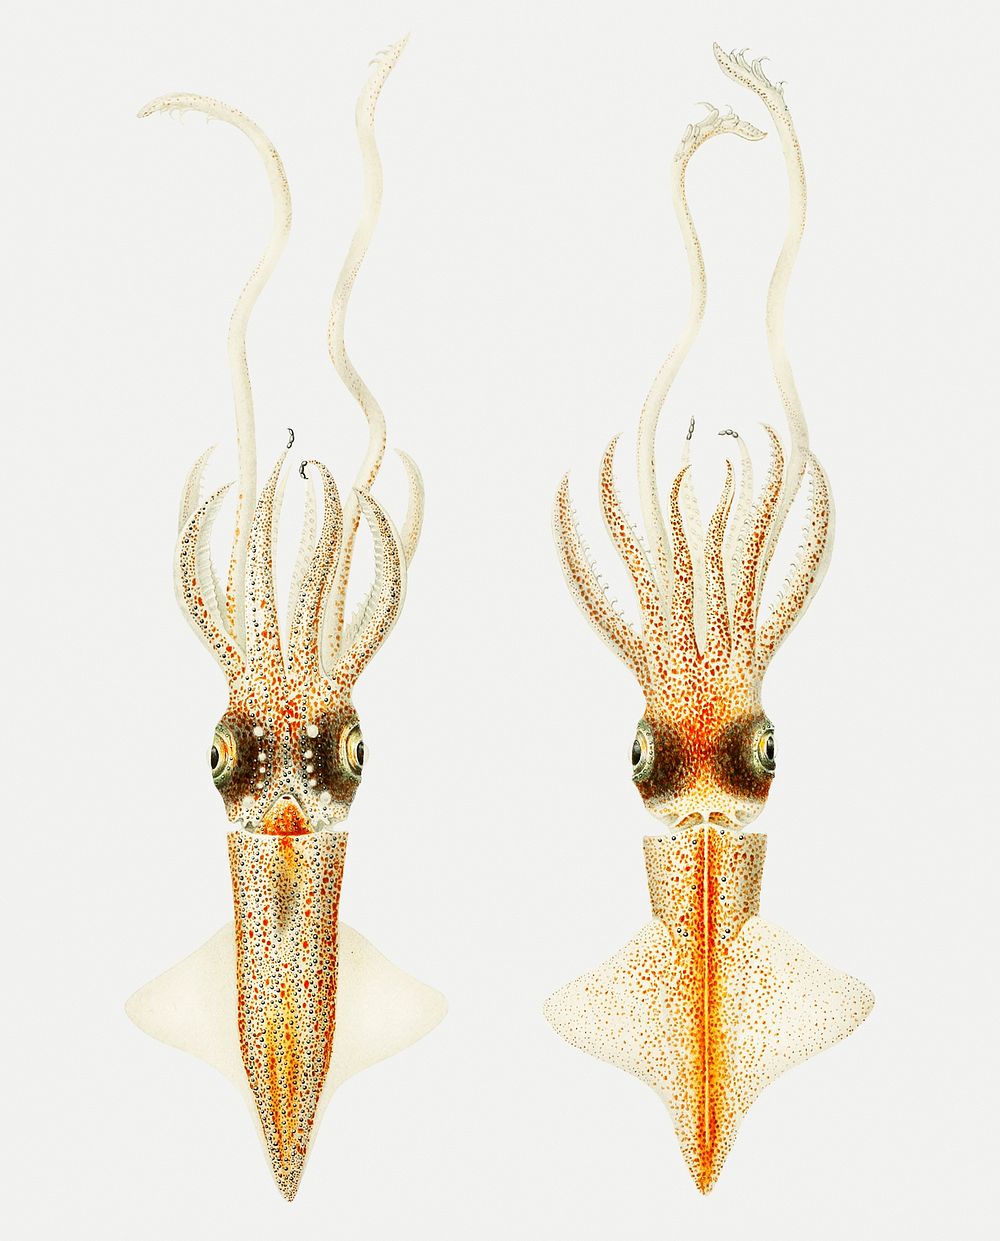 Abraliopsis morisii, bioluminescent squid illustration